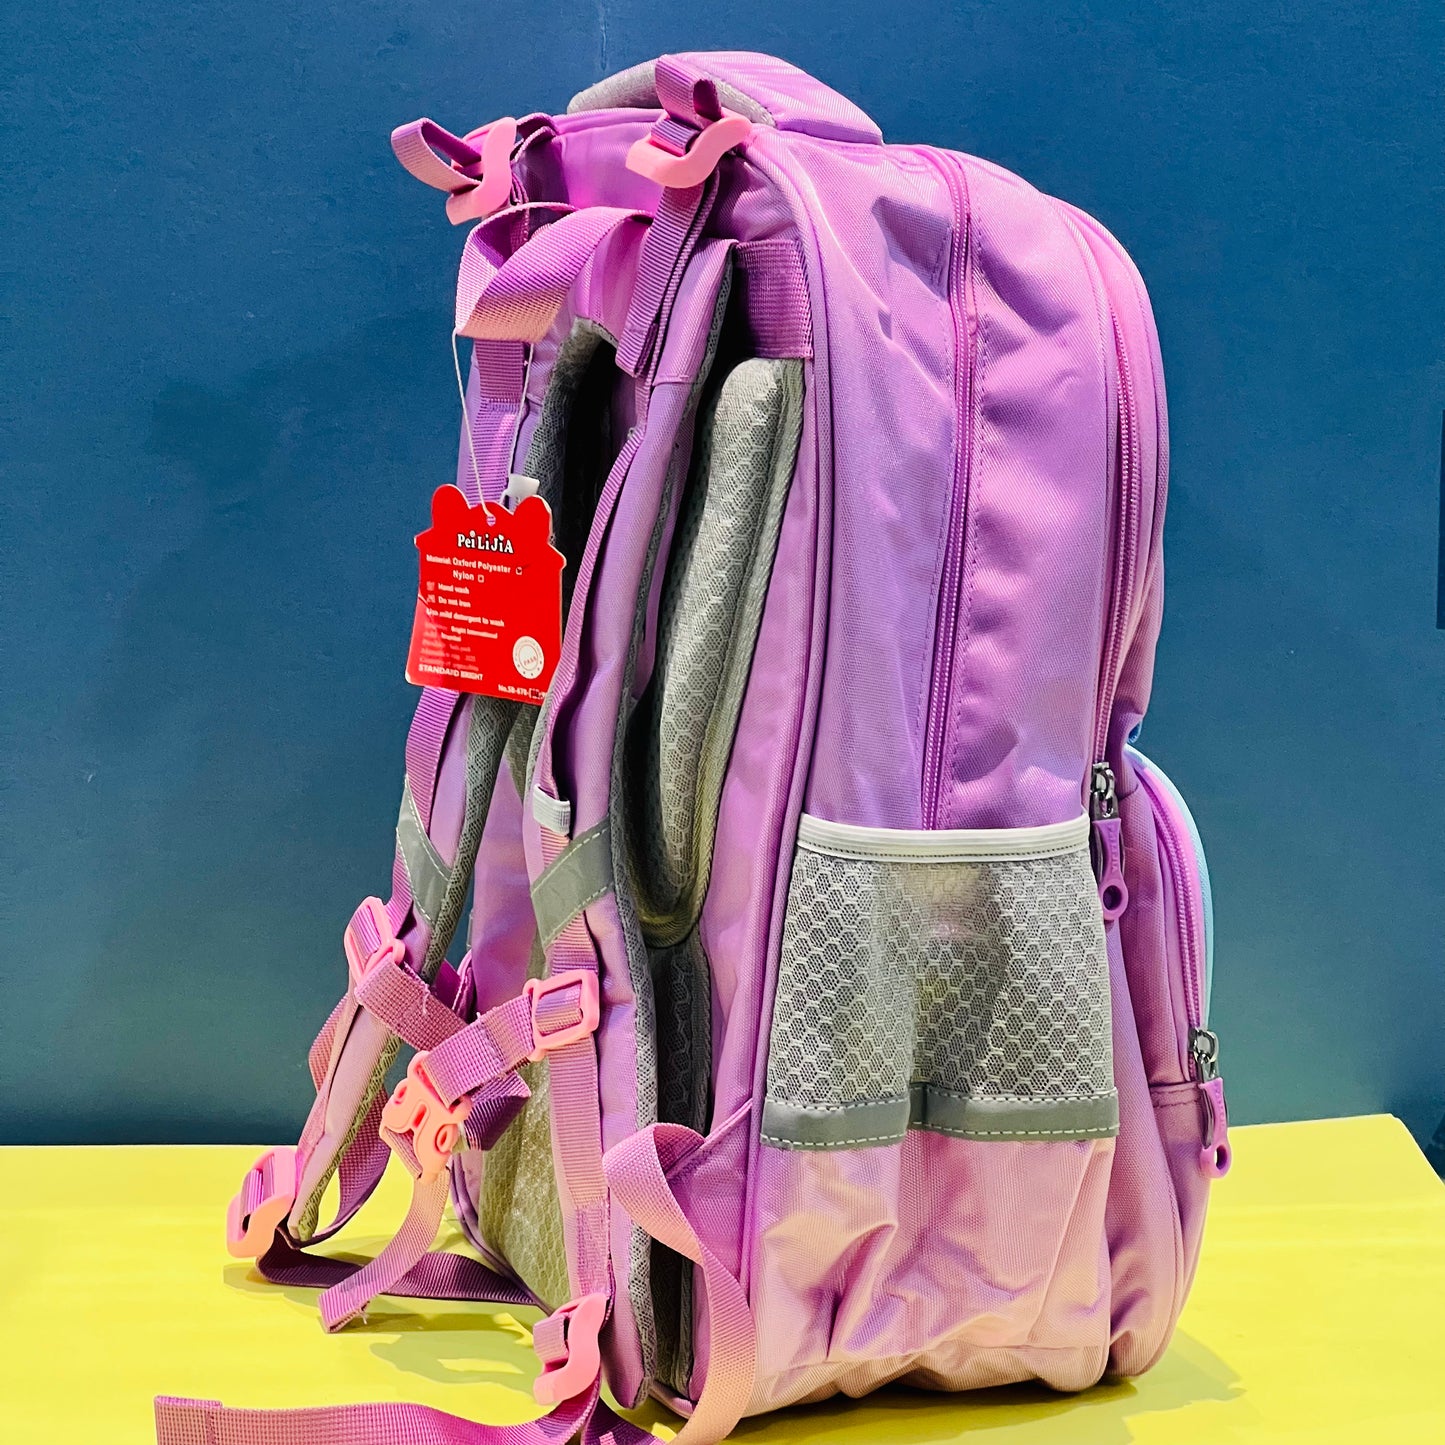 Super Cute Dino and Mermaid School Bags